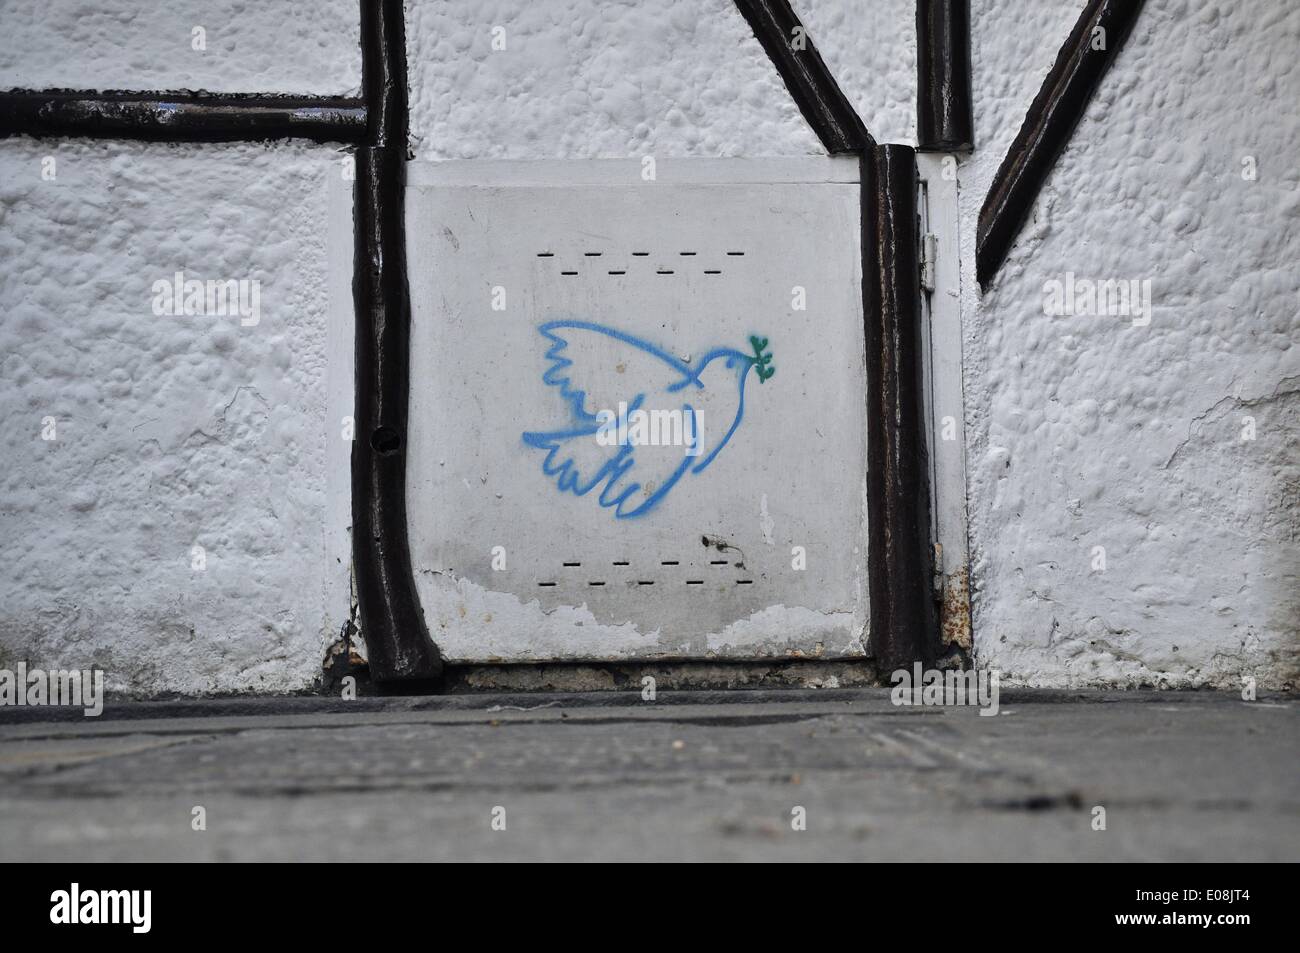 Barcelone, Espagne. 13th mai 2013. Un graffiti d'une colombe basé sur l'image de Pablo Picasso est peint sur un mur blanc dans le quartier de Ciutat Vella à Barcelone, Espagne, 13 mai 2013. Fotoarchiv für Zeitgeschichte - PAS DE SERVICE DE FIL/dpa/Alay Live News Banque D'Images